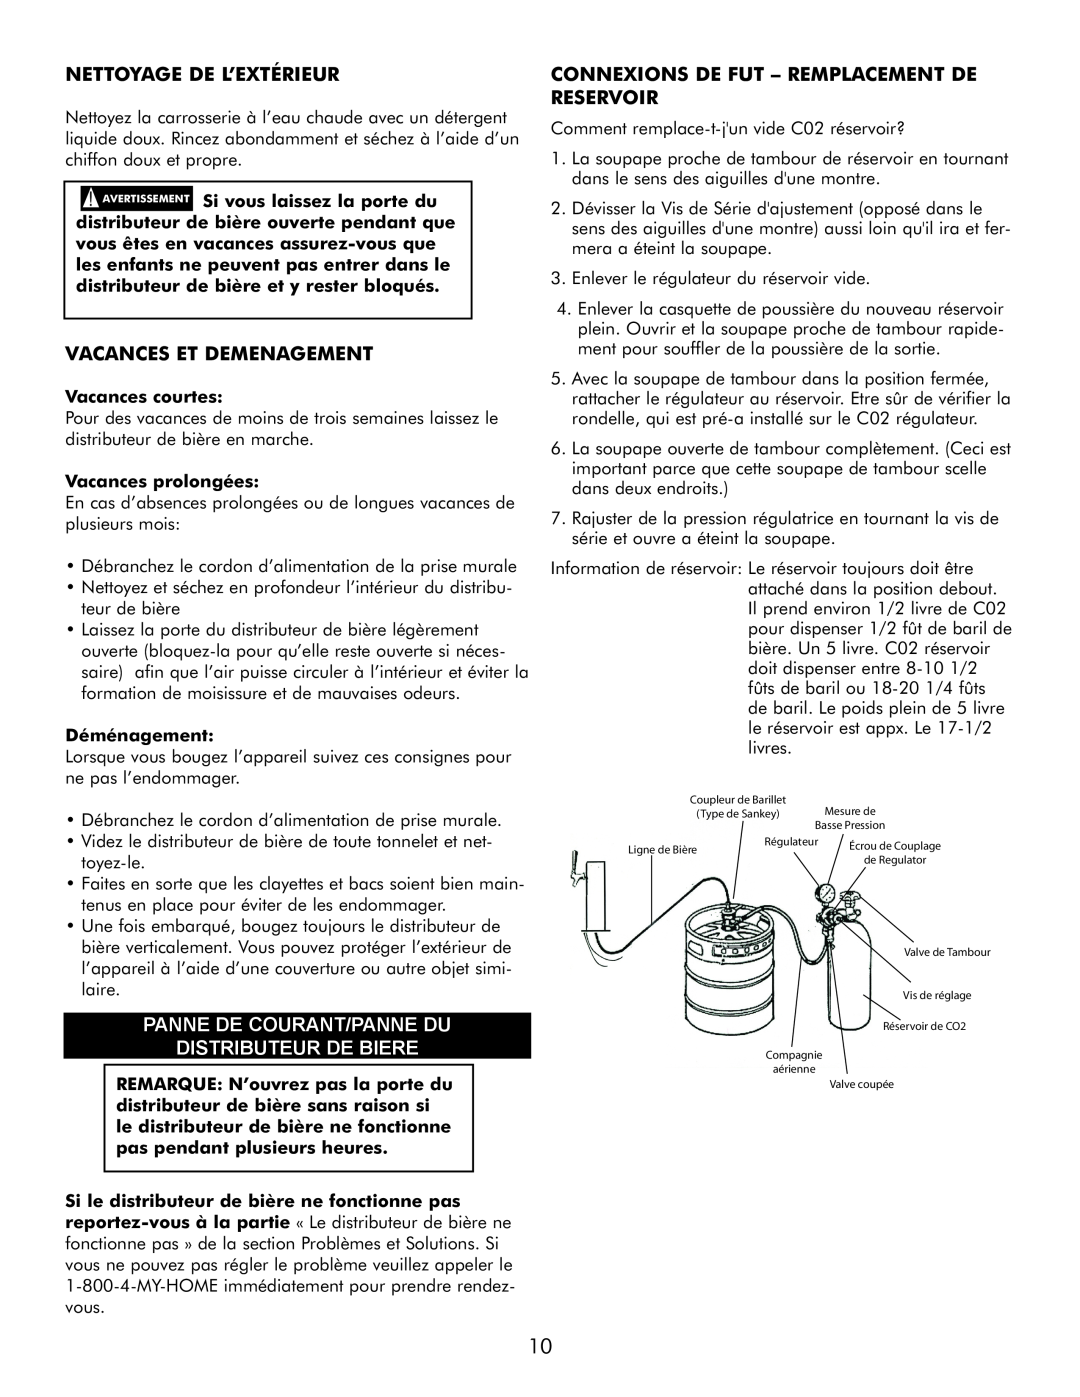 Sears 183.91579 manual Nettoyage De L’Extérieur, Vacances Et Demenagement, Panne De Courant/Panne Du Distributeur De Biere 